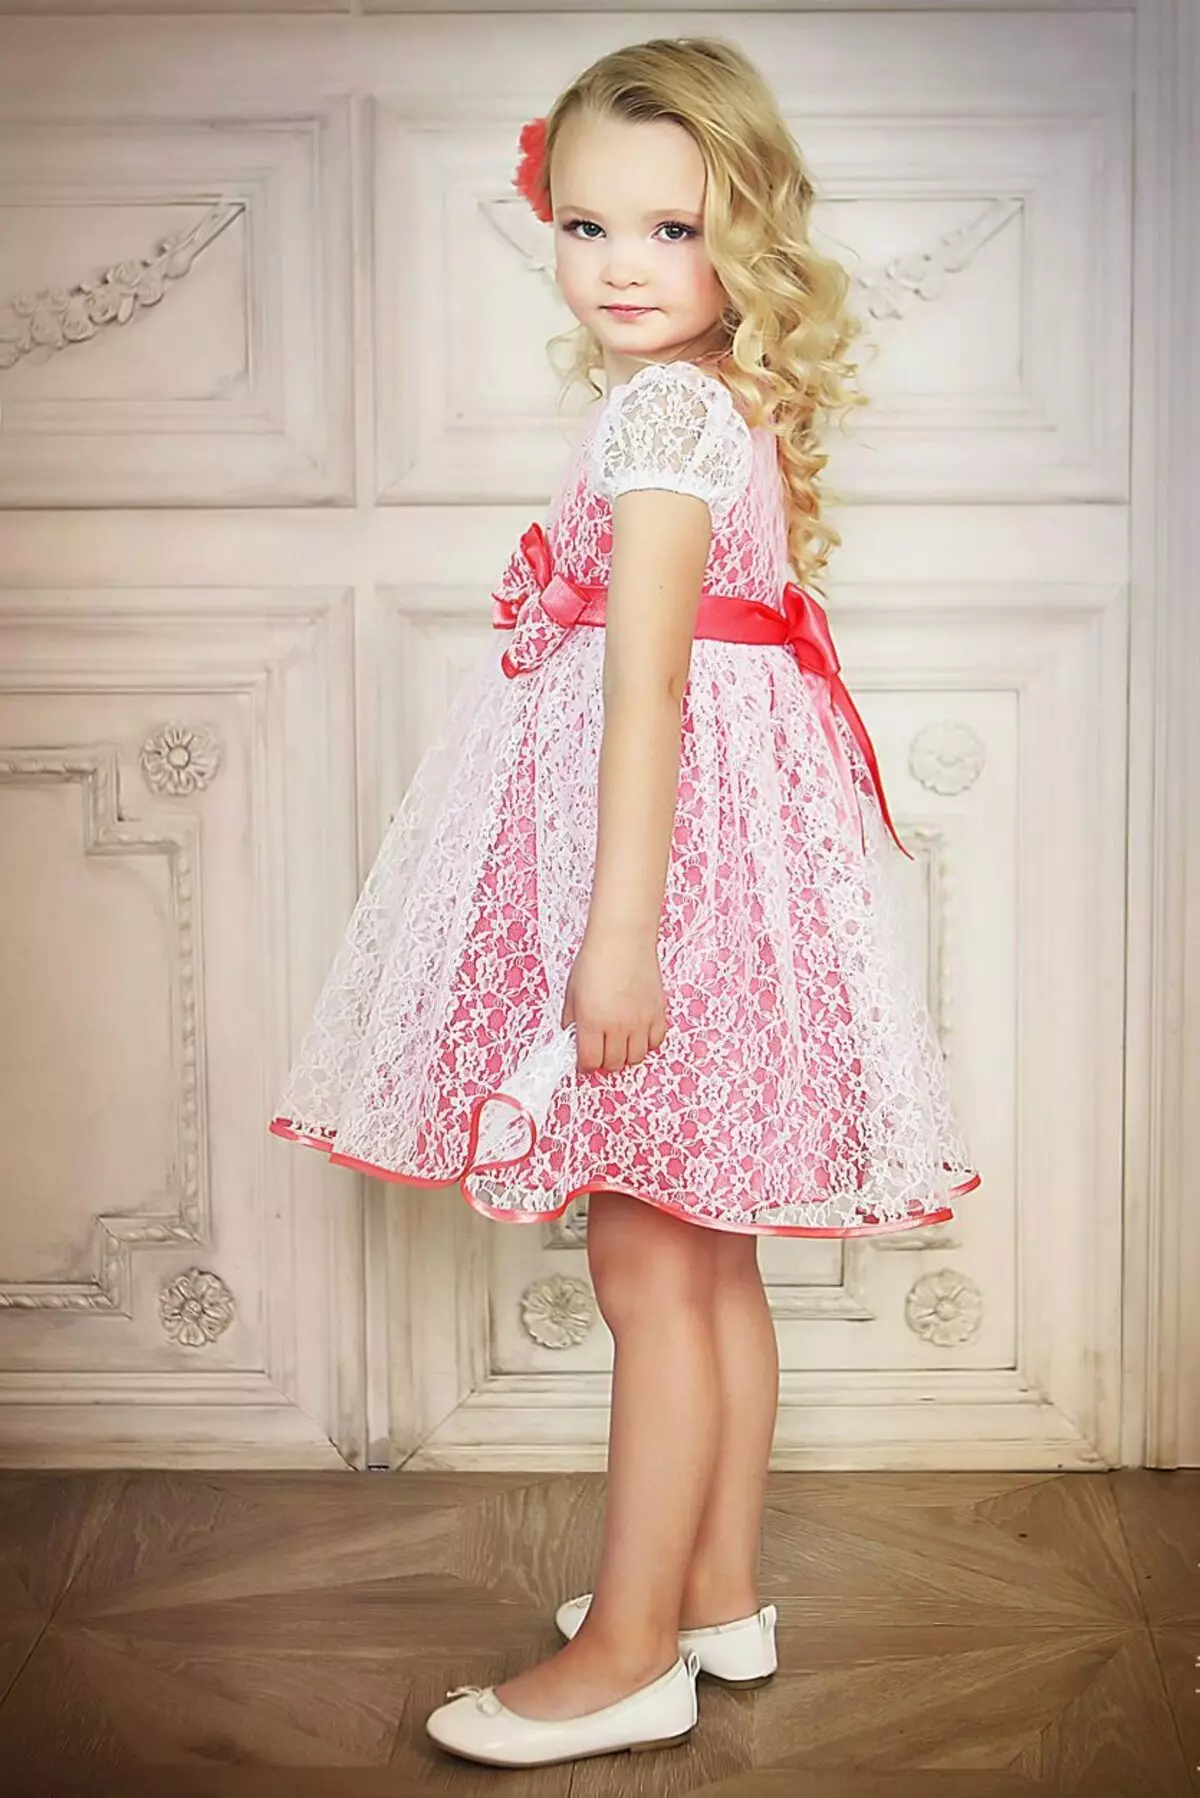 لباس زیبا برای دختر 2-3 ساله توری